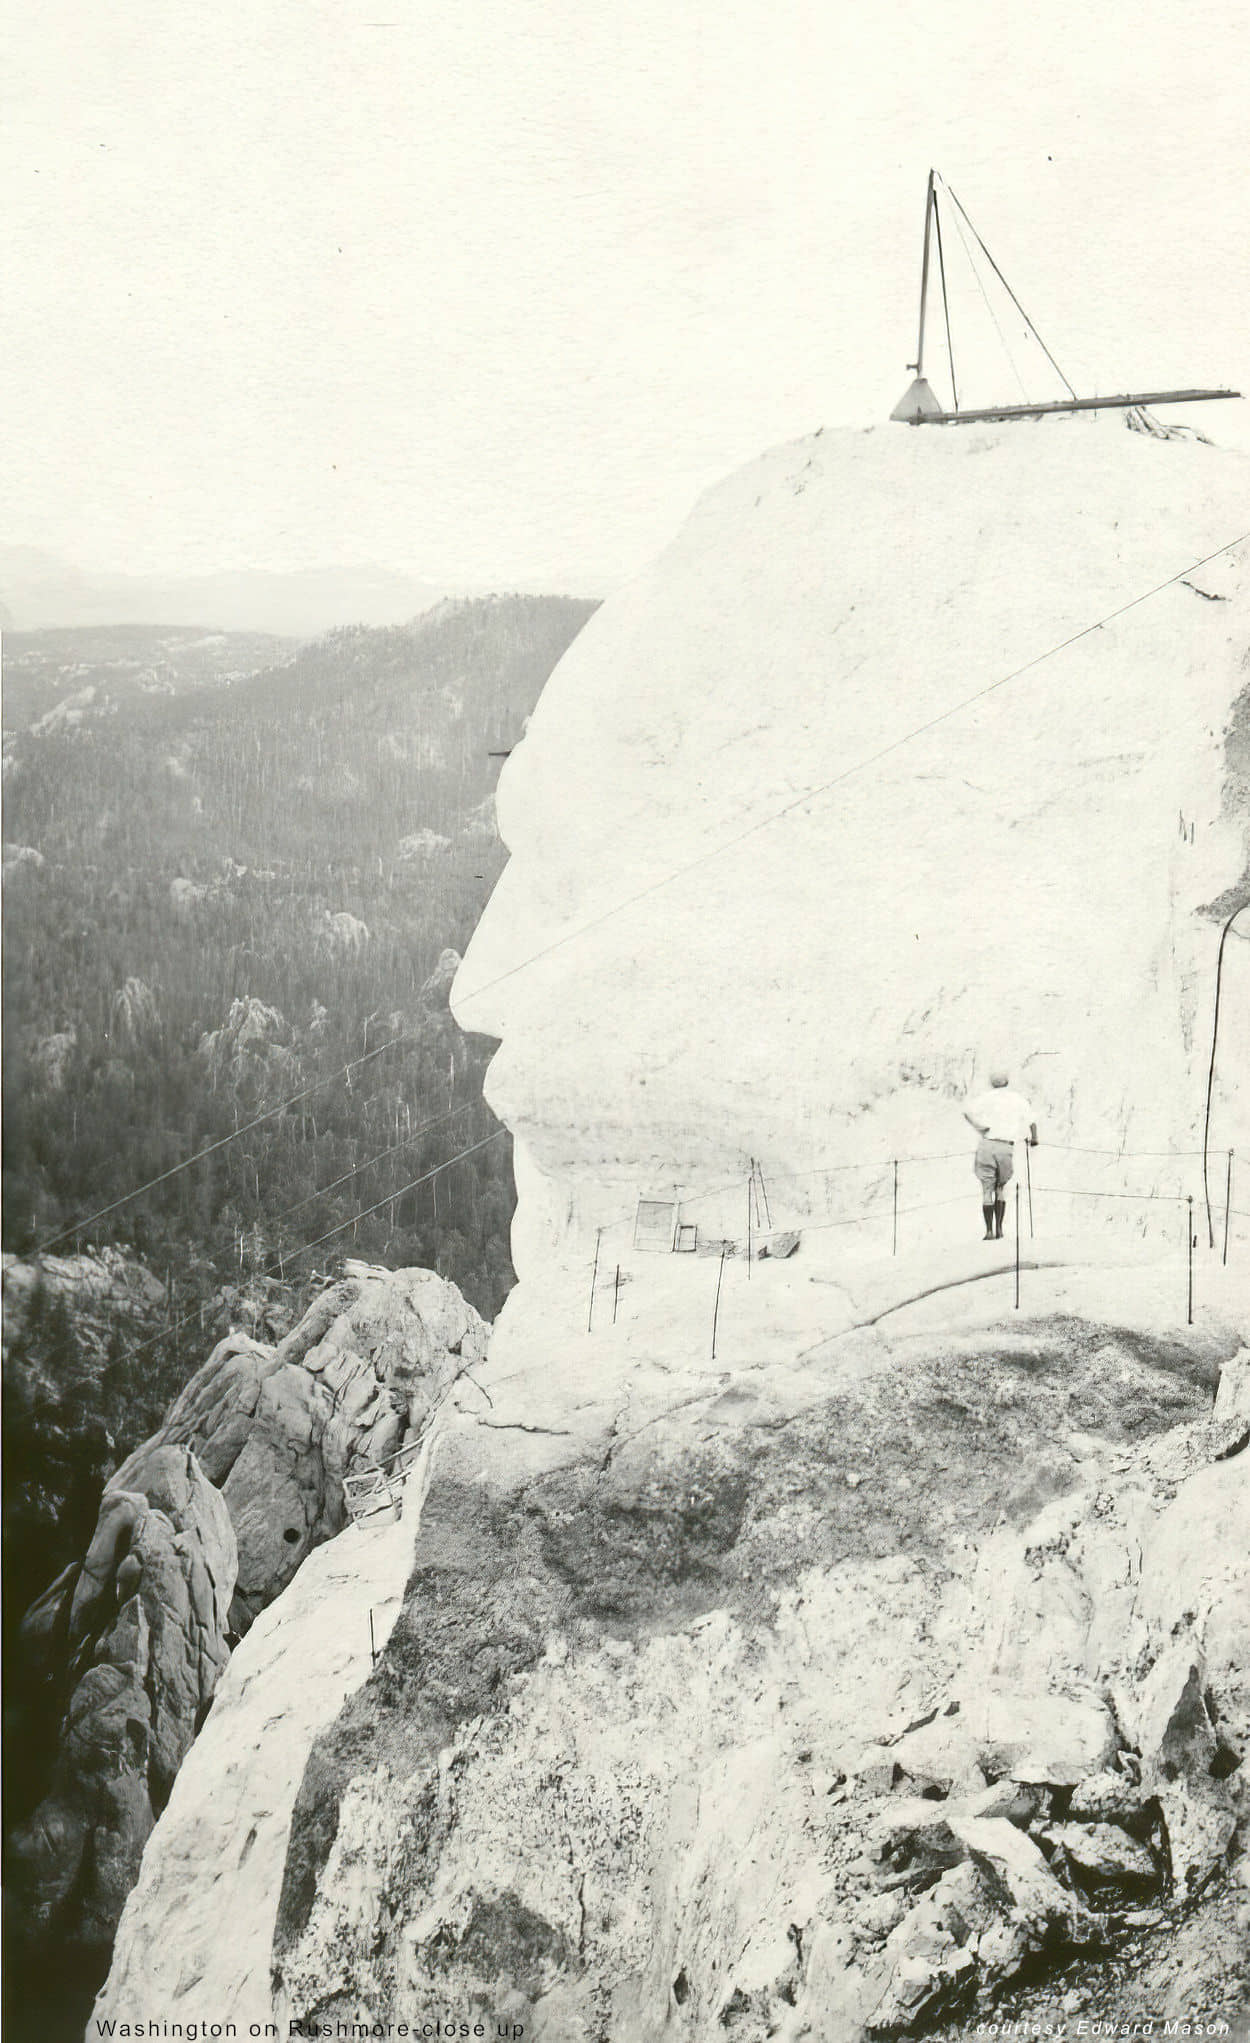 man viewing Washington on Mt Rushmore